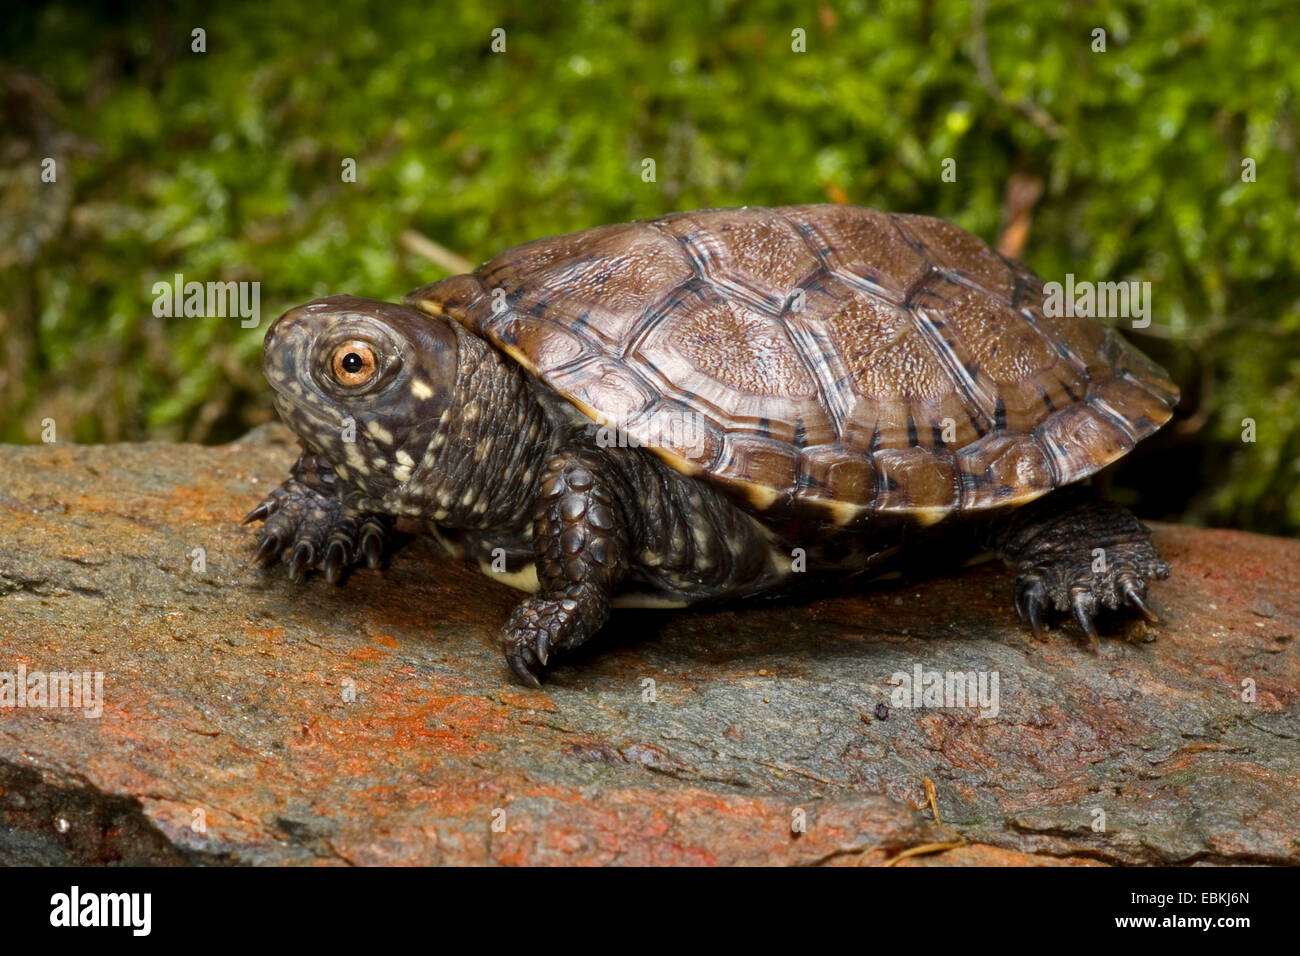 European pond terrapin, European pond turtle, European pond tortoise (Emys orbicularis), young European pond terrapin Stock Photo